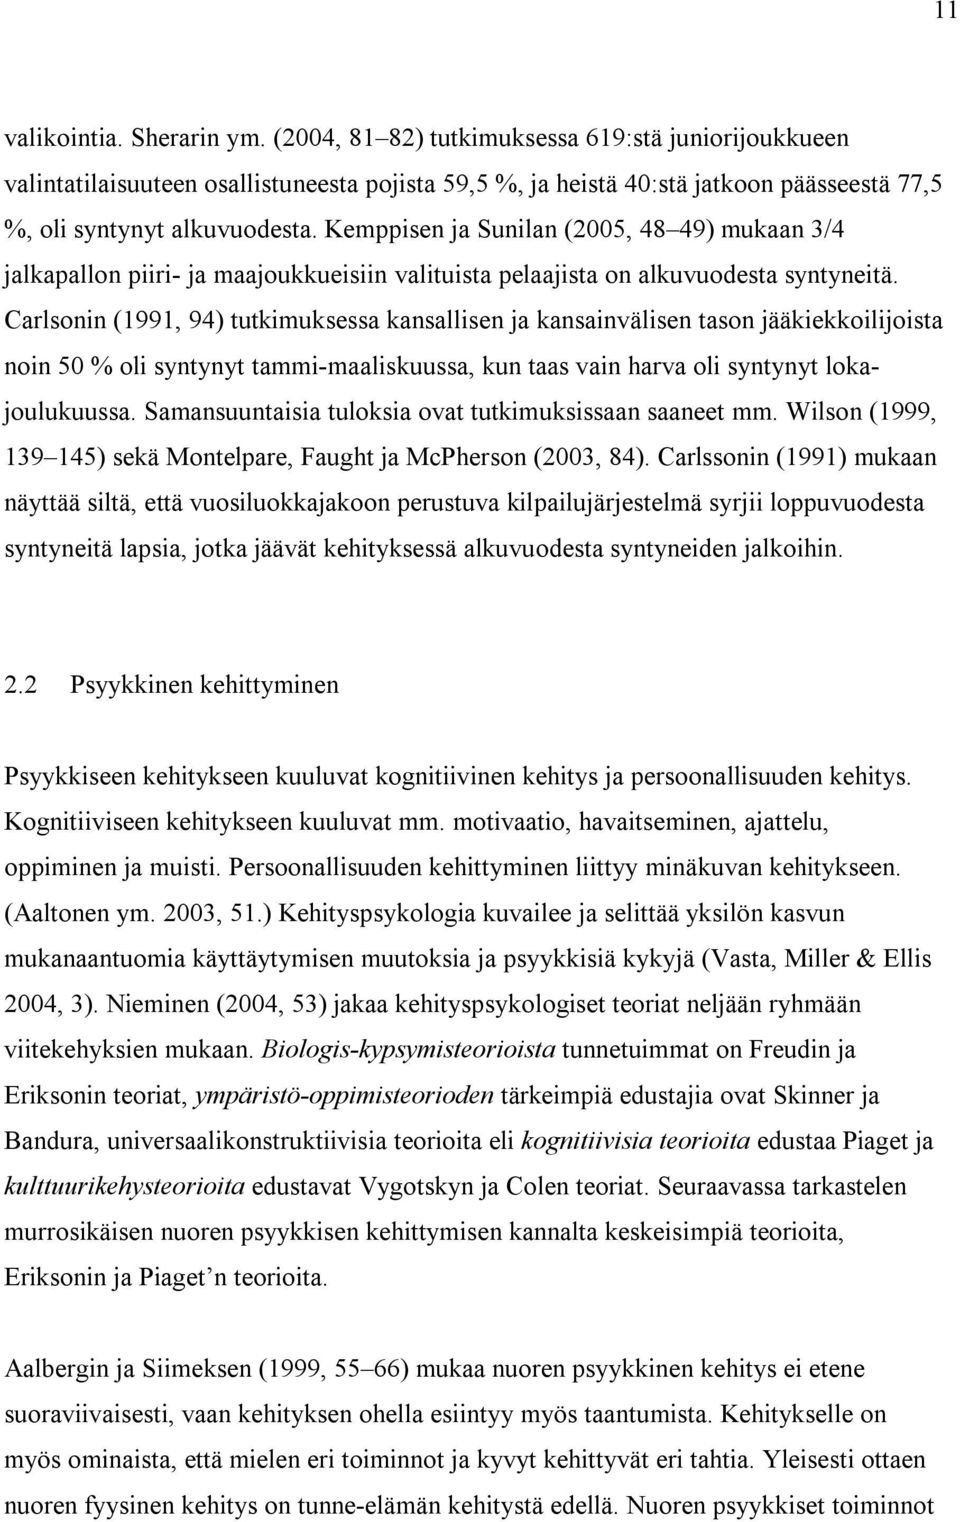 Kemppisen ja Sunilan (2005, 48 49) mukaan 3/4 jalkapallon piiri- ja maajoukkueisiin valituista pelaajista on alkuvuodesta syntyneitä.